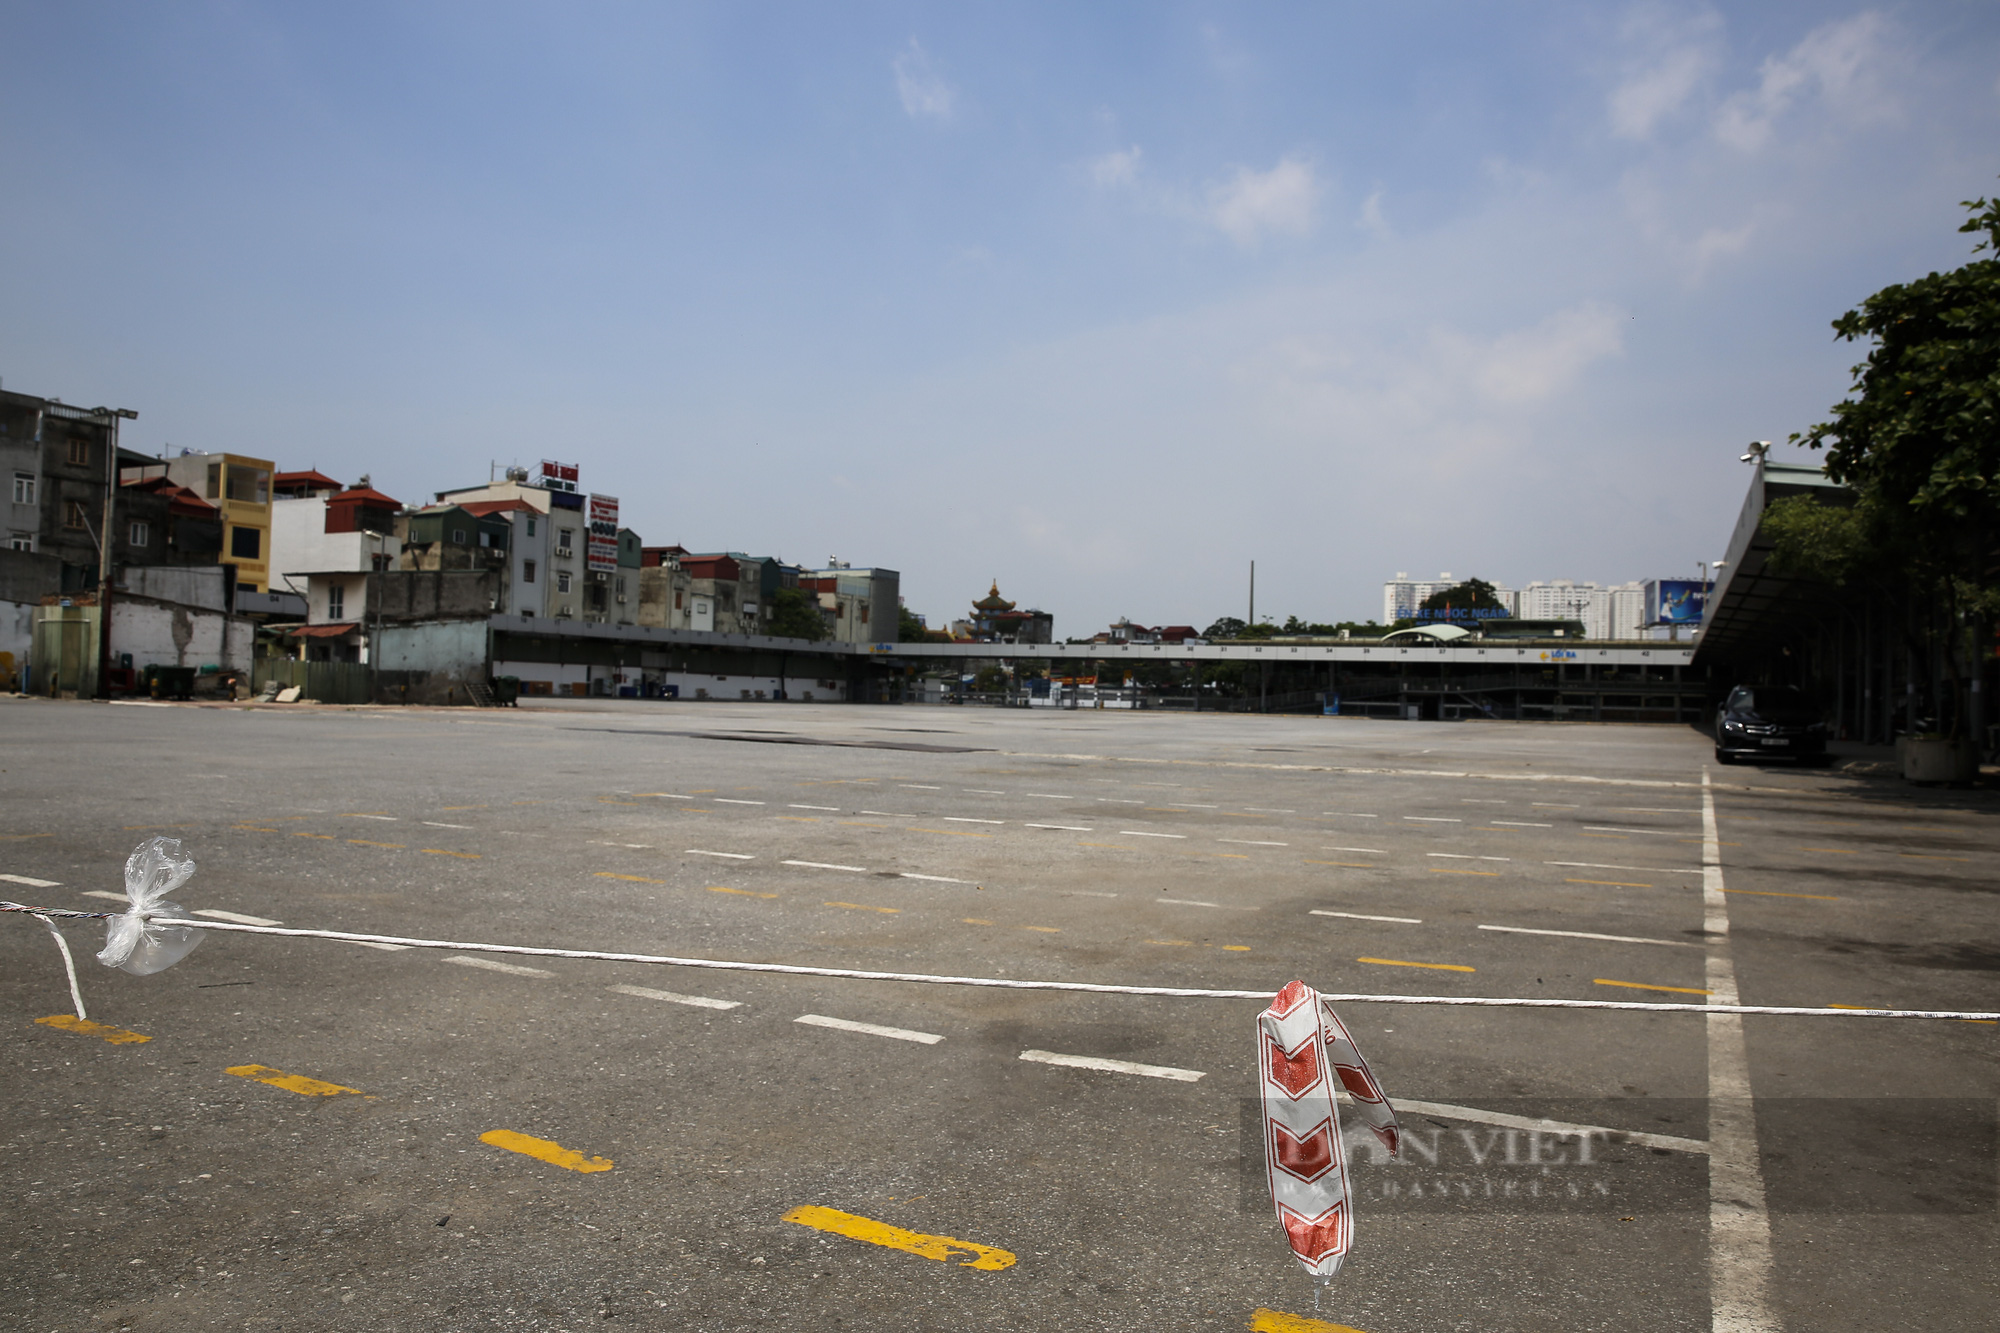 Test Covid-19 cho lái xe vào Hà Nội tại bến xe Nước Ngầm, Yên Nghĩa - Ảnh 2.